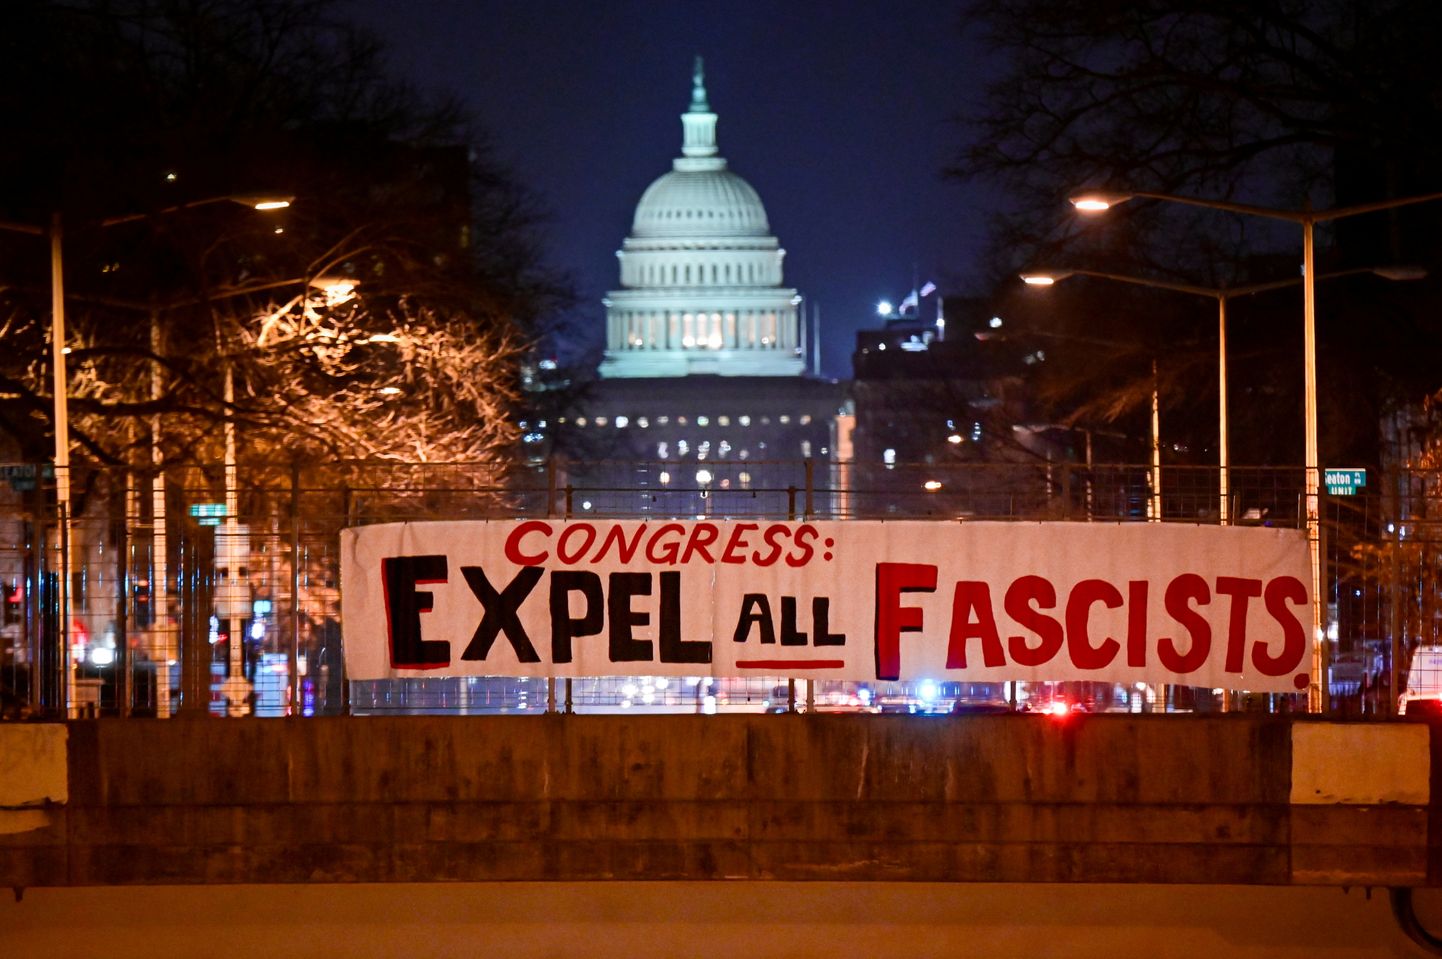 Kongressi juures olevale sillale püstitatud plakat kutsub üles kõiki fašiste välja viskama.